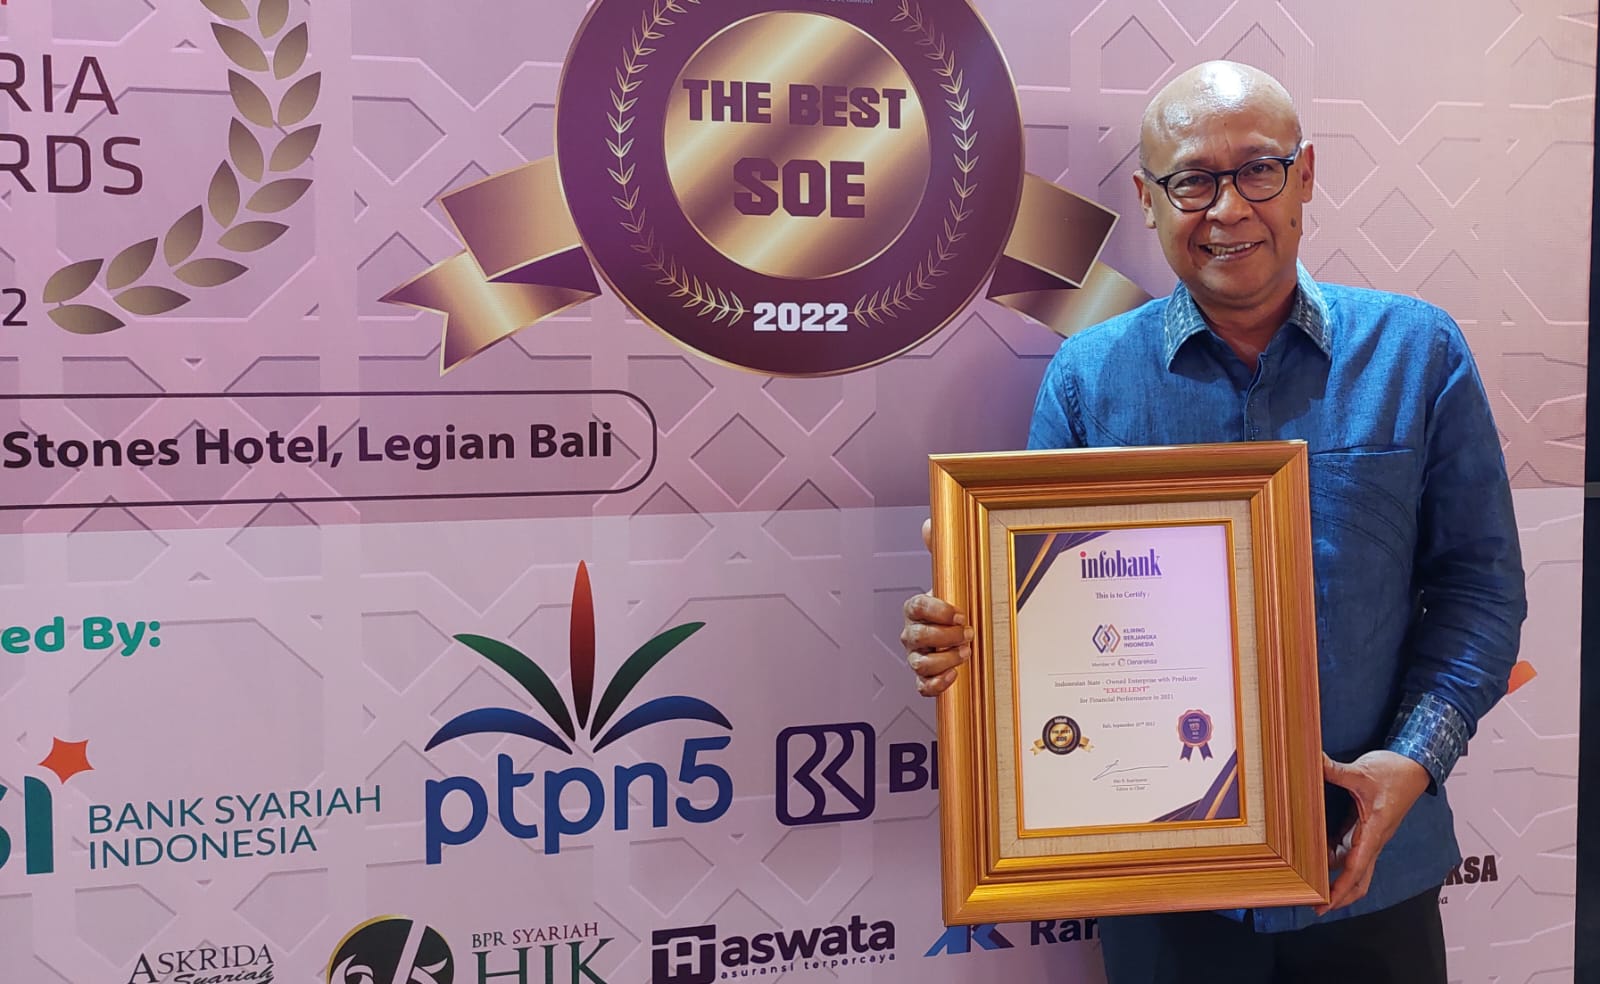 Kinerja Mengkilat, KBI Raih The Best State Owned Enterprise Award 2022 